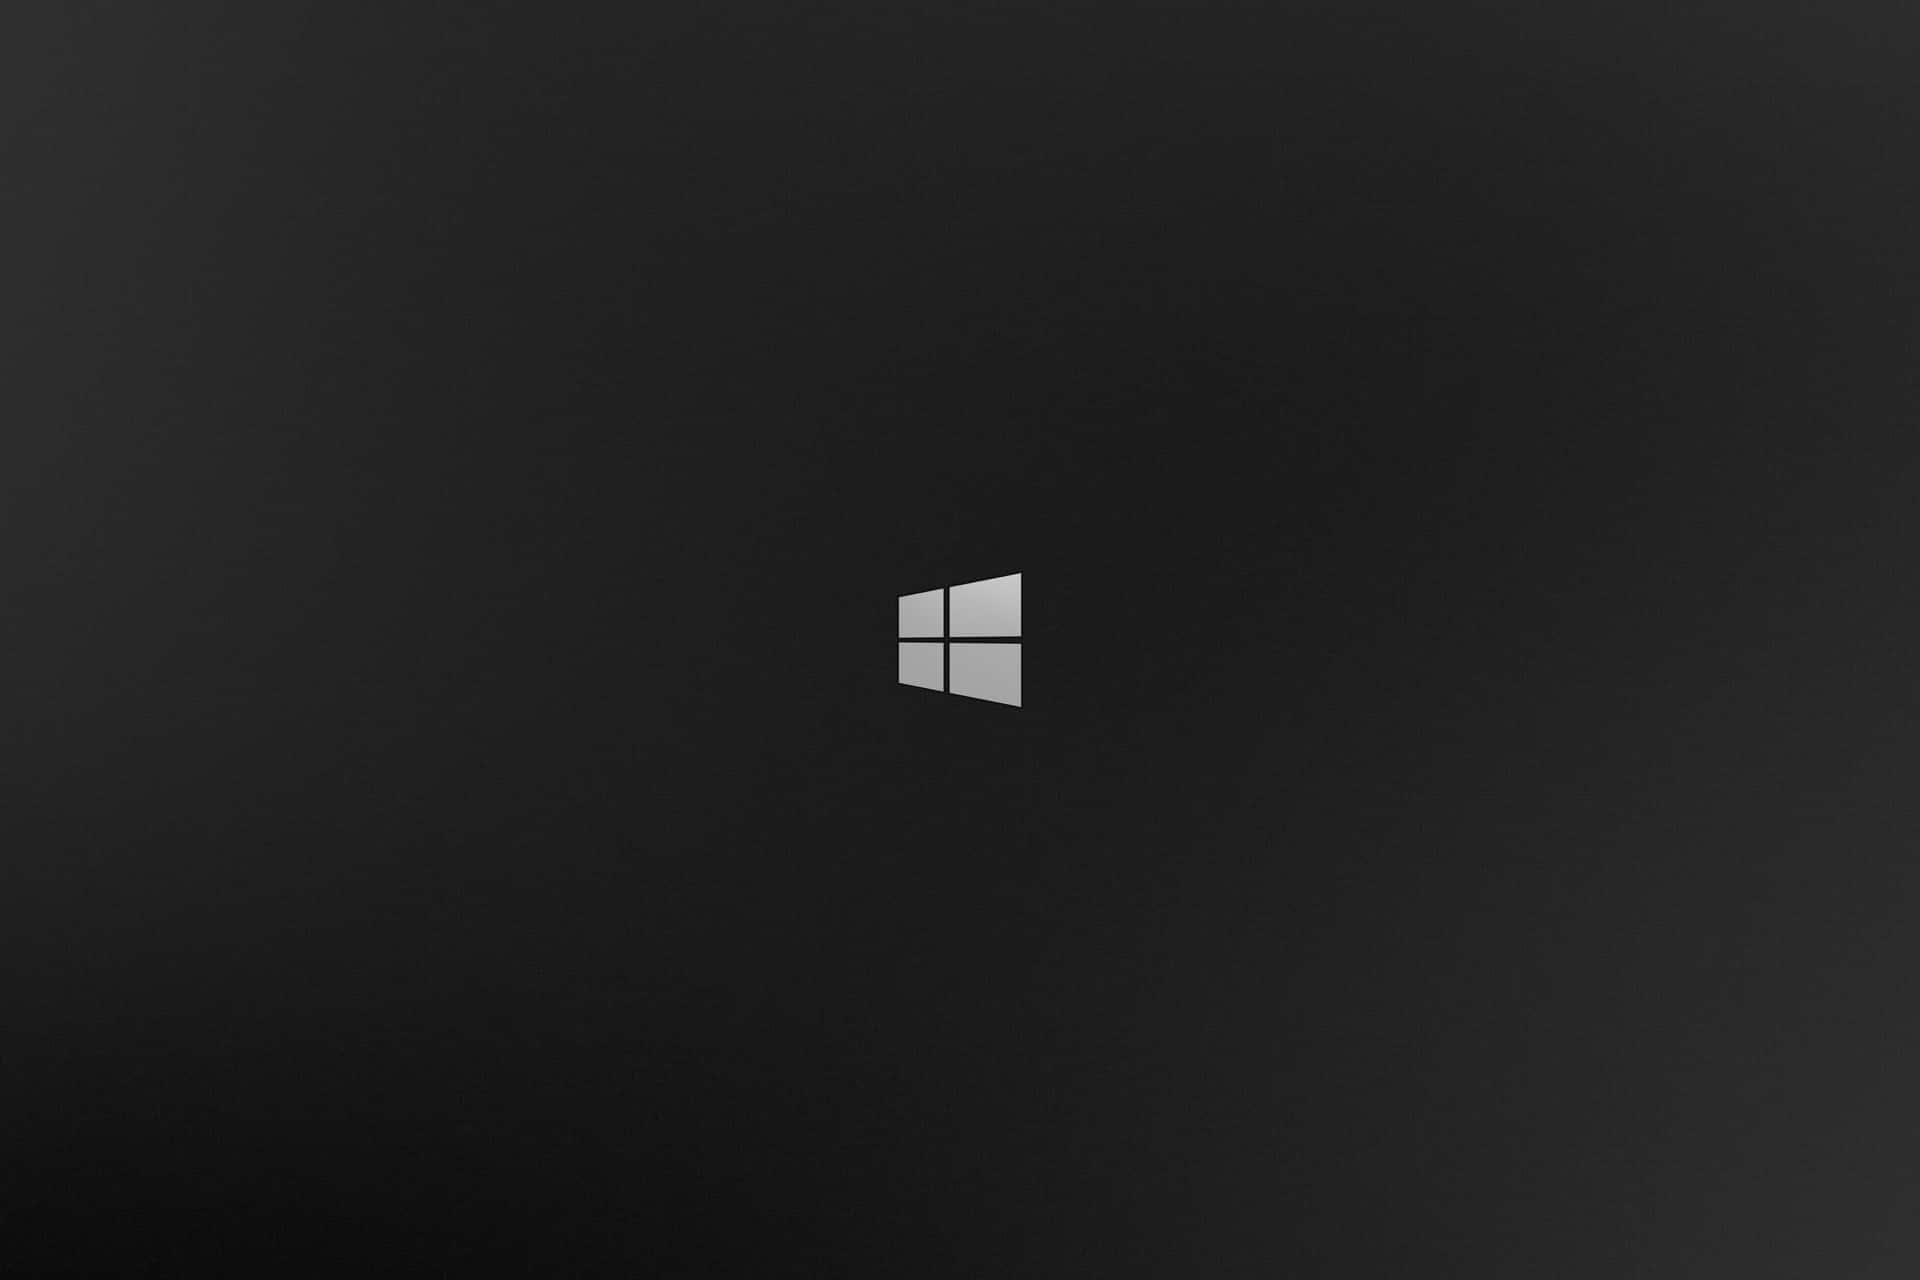 Diesist Die Benutzeroberfläche Von Windows 1. Wallpaper